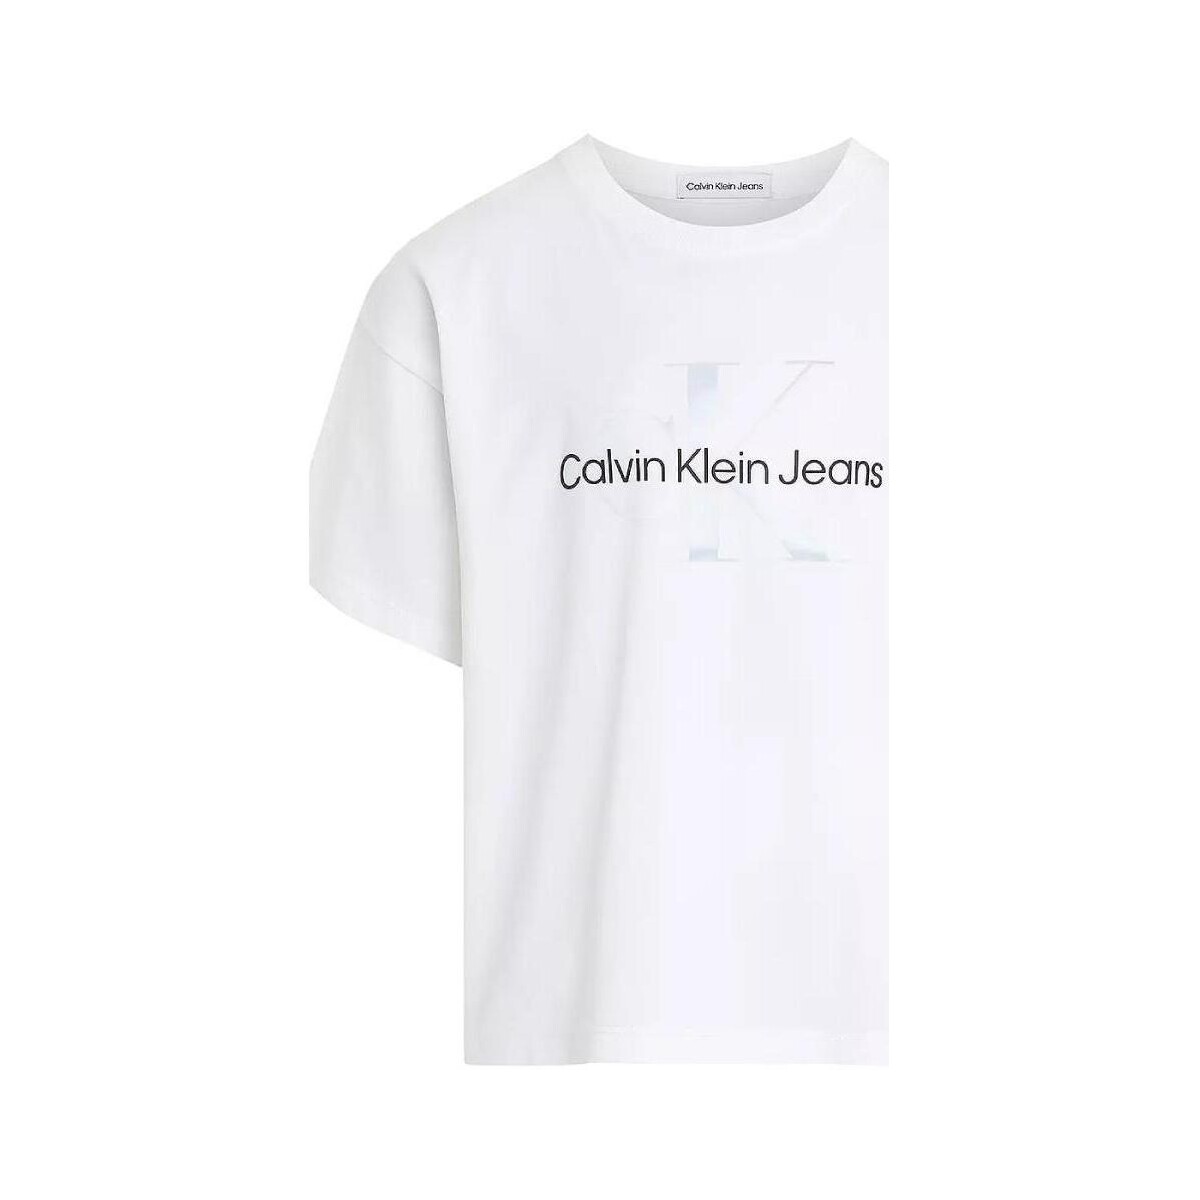 Vêtements Fille Calvin Klein Hue Knit Chaussette Tennis Femmes  Blanc